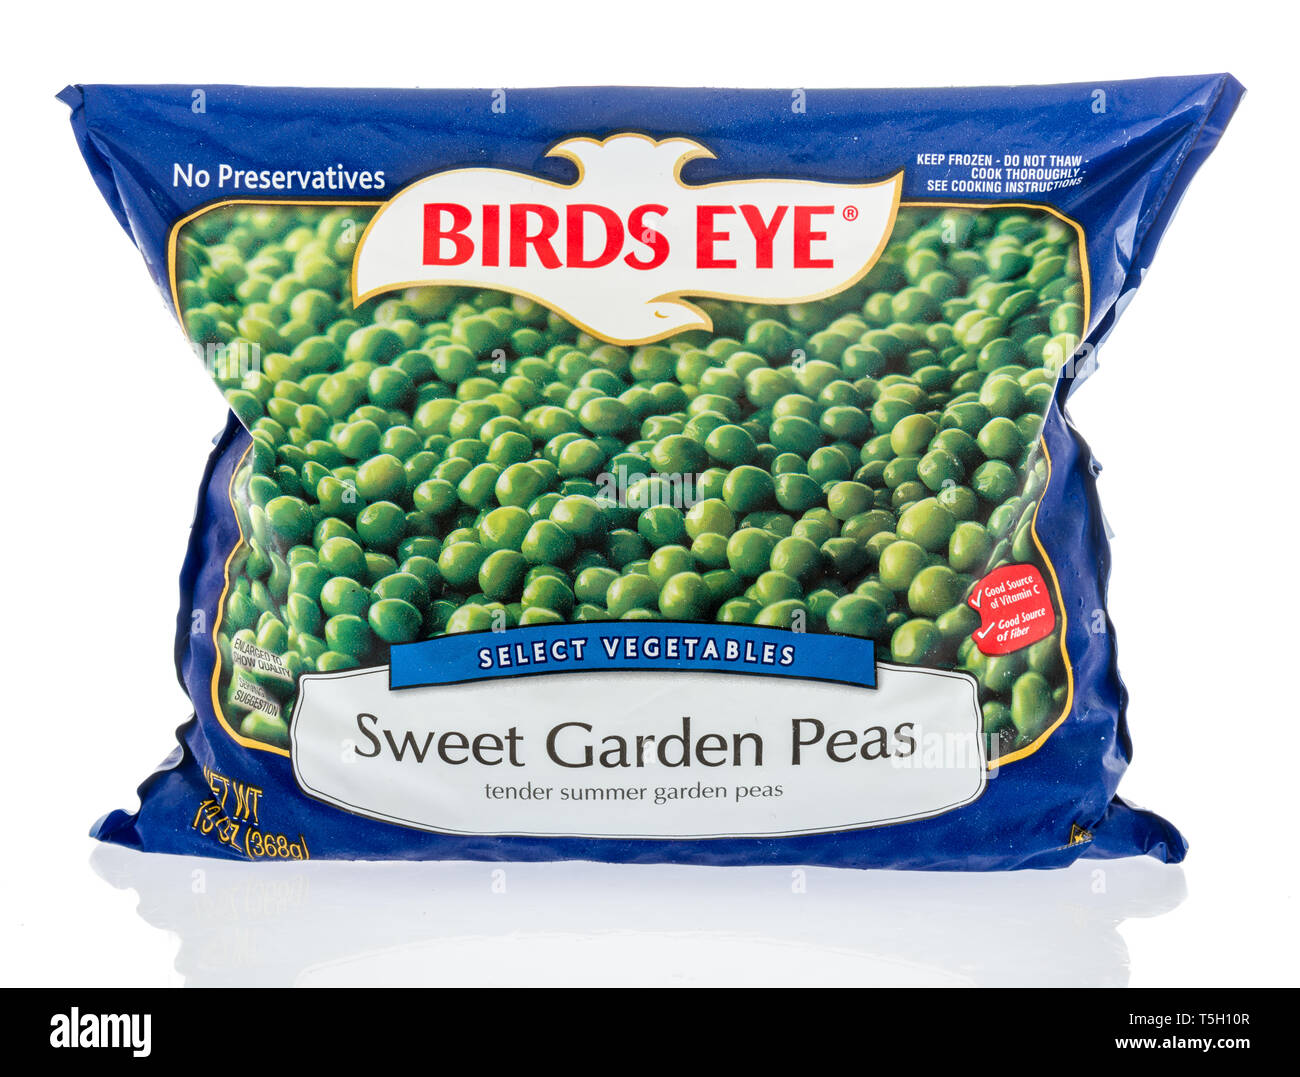 Winneconne, WI - 22. April 2019: ein Paket von Birds Eye wählen Gemüse süßes Garten Erbsen gefroren Gemüse auf einem isolierten Hintergrund Stockfoto